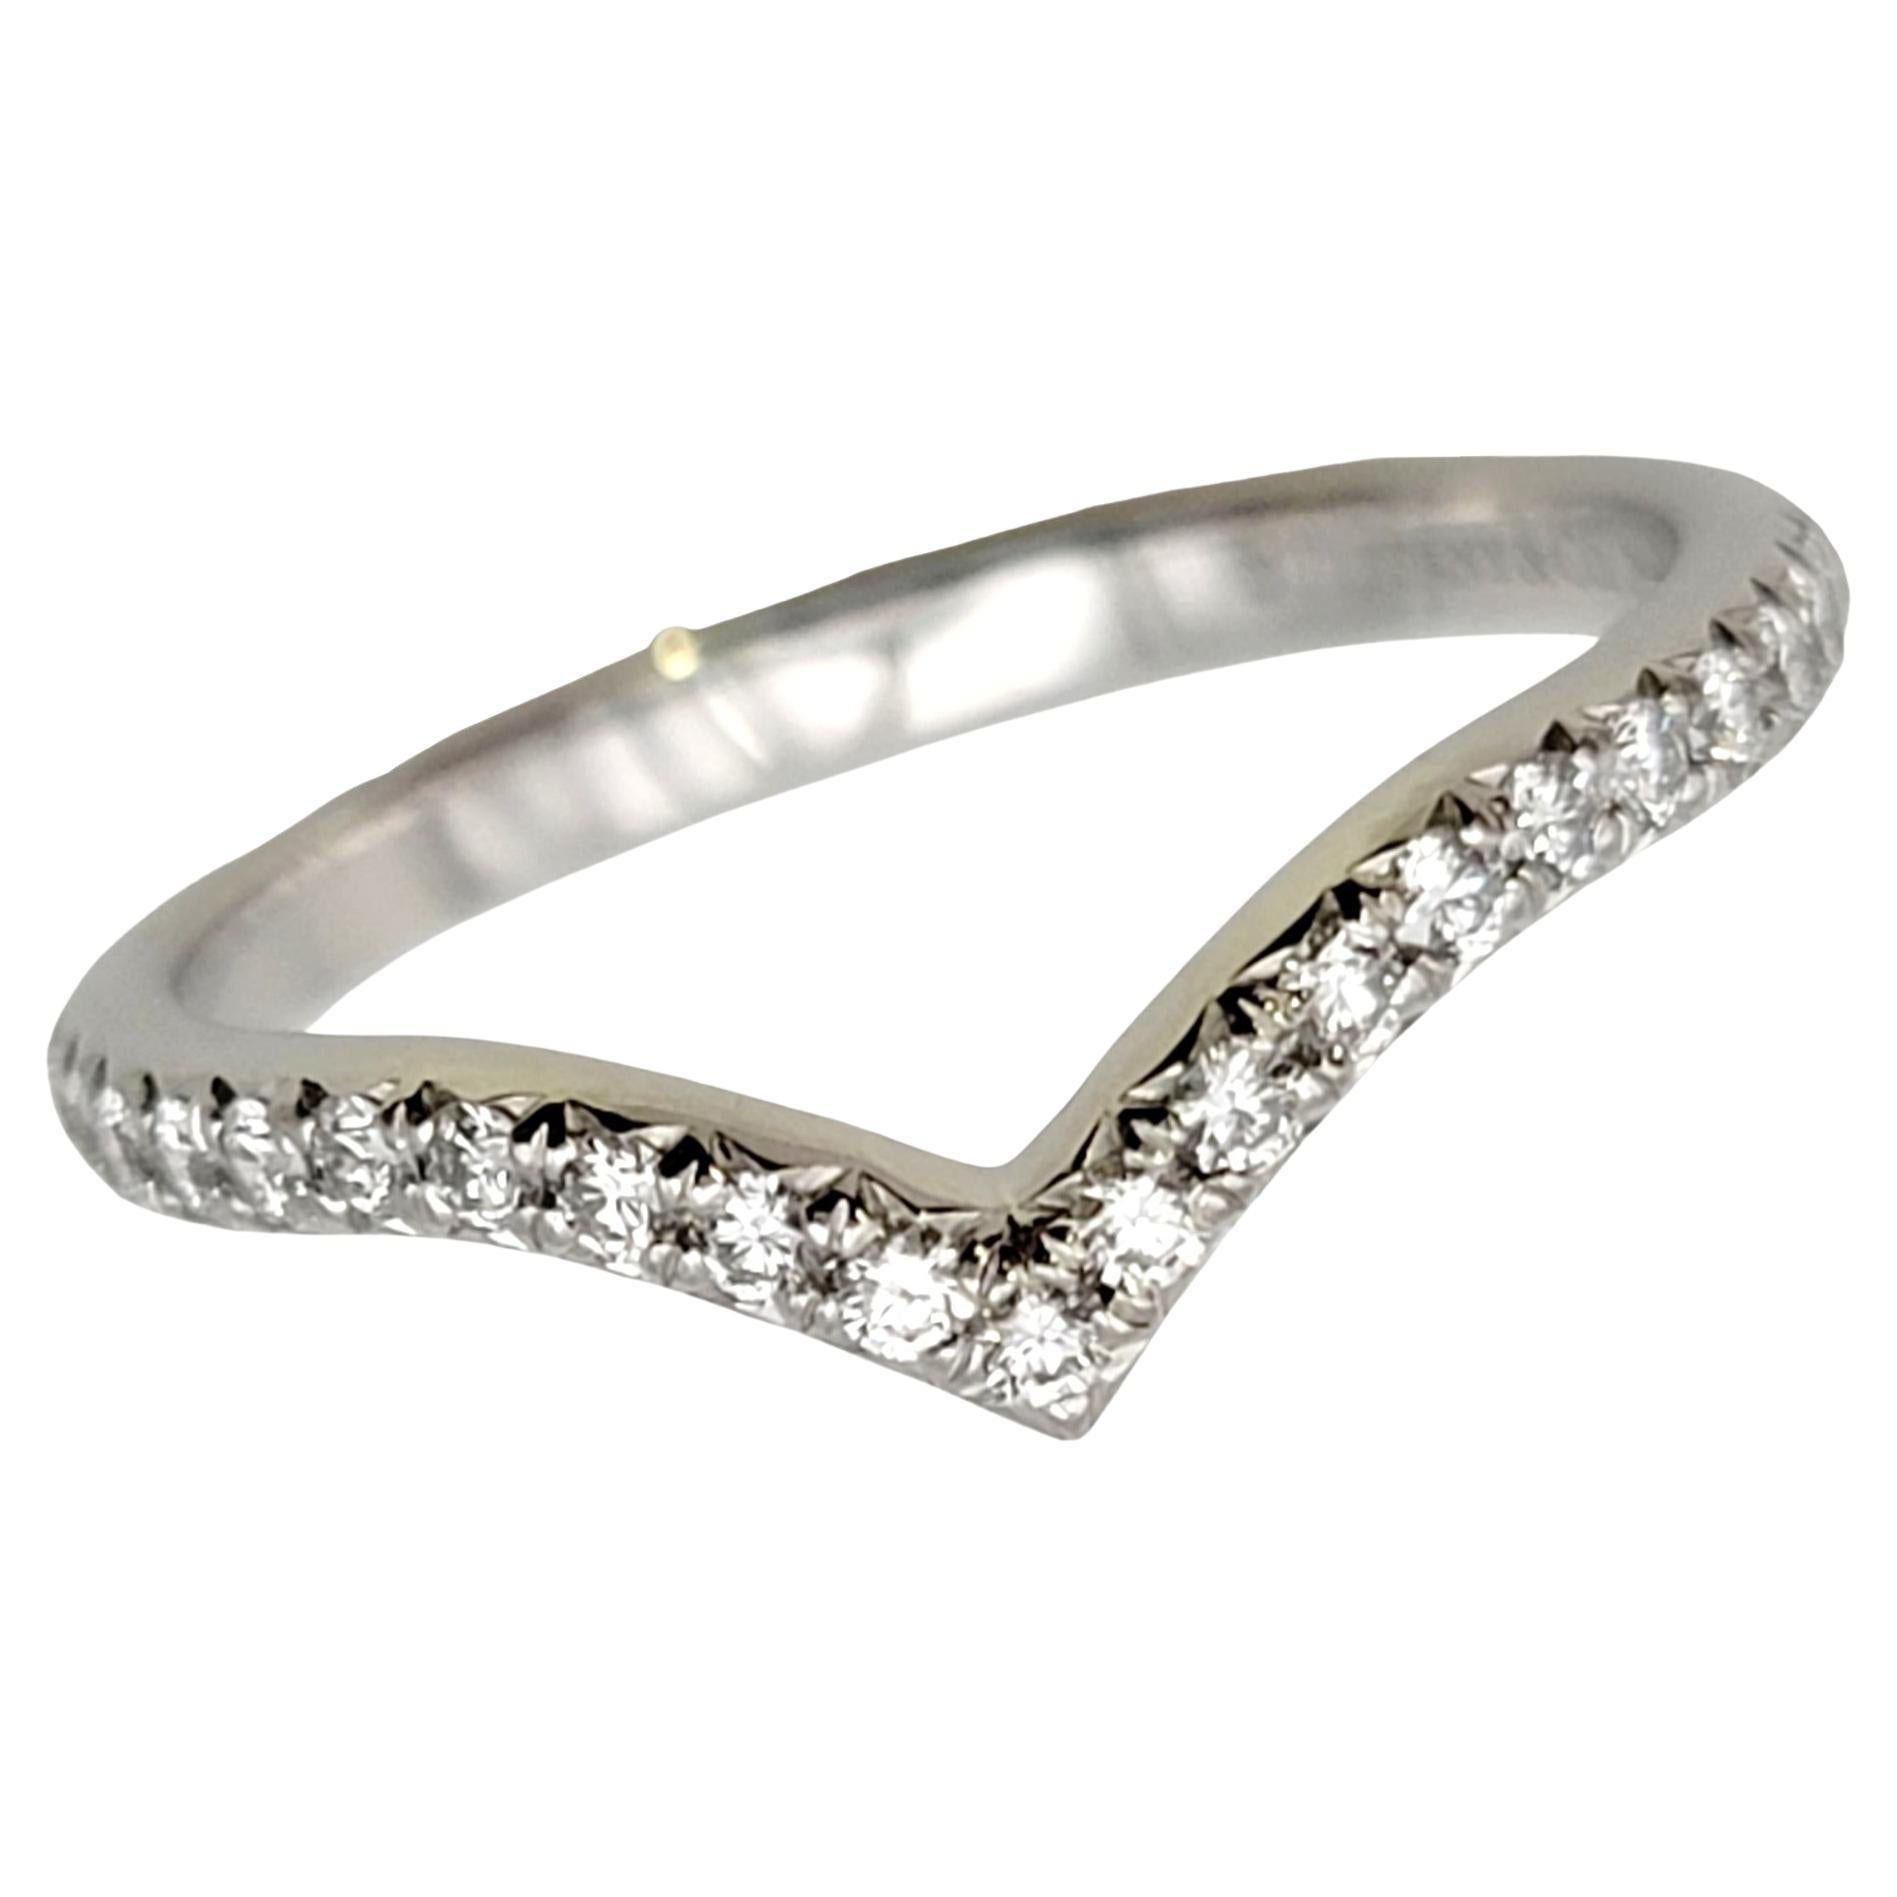 Taille de l'anneau : 5.75

Magnifique bague Tiffany & Co. 'Soleste' en diamant avec un anneau en 'V'.  Fondée en 1837 à New York, Tiffany & Co. est l'une des maisons de design de luxe les plus célèbres au monde, reconnue dans le monde entier pour